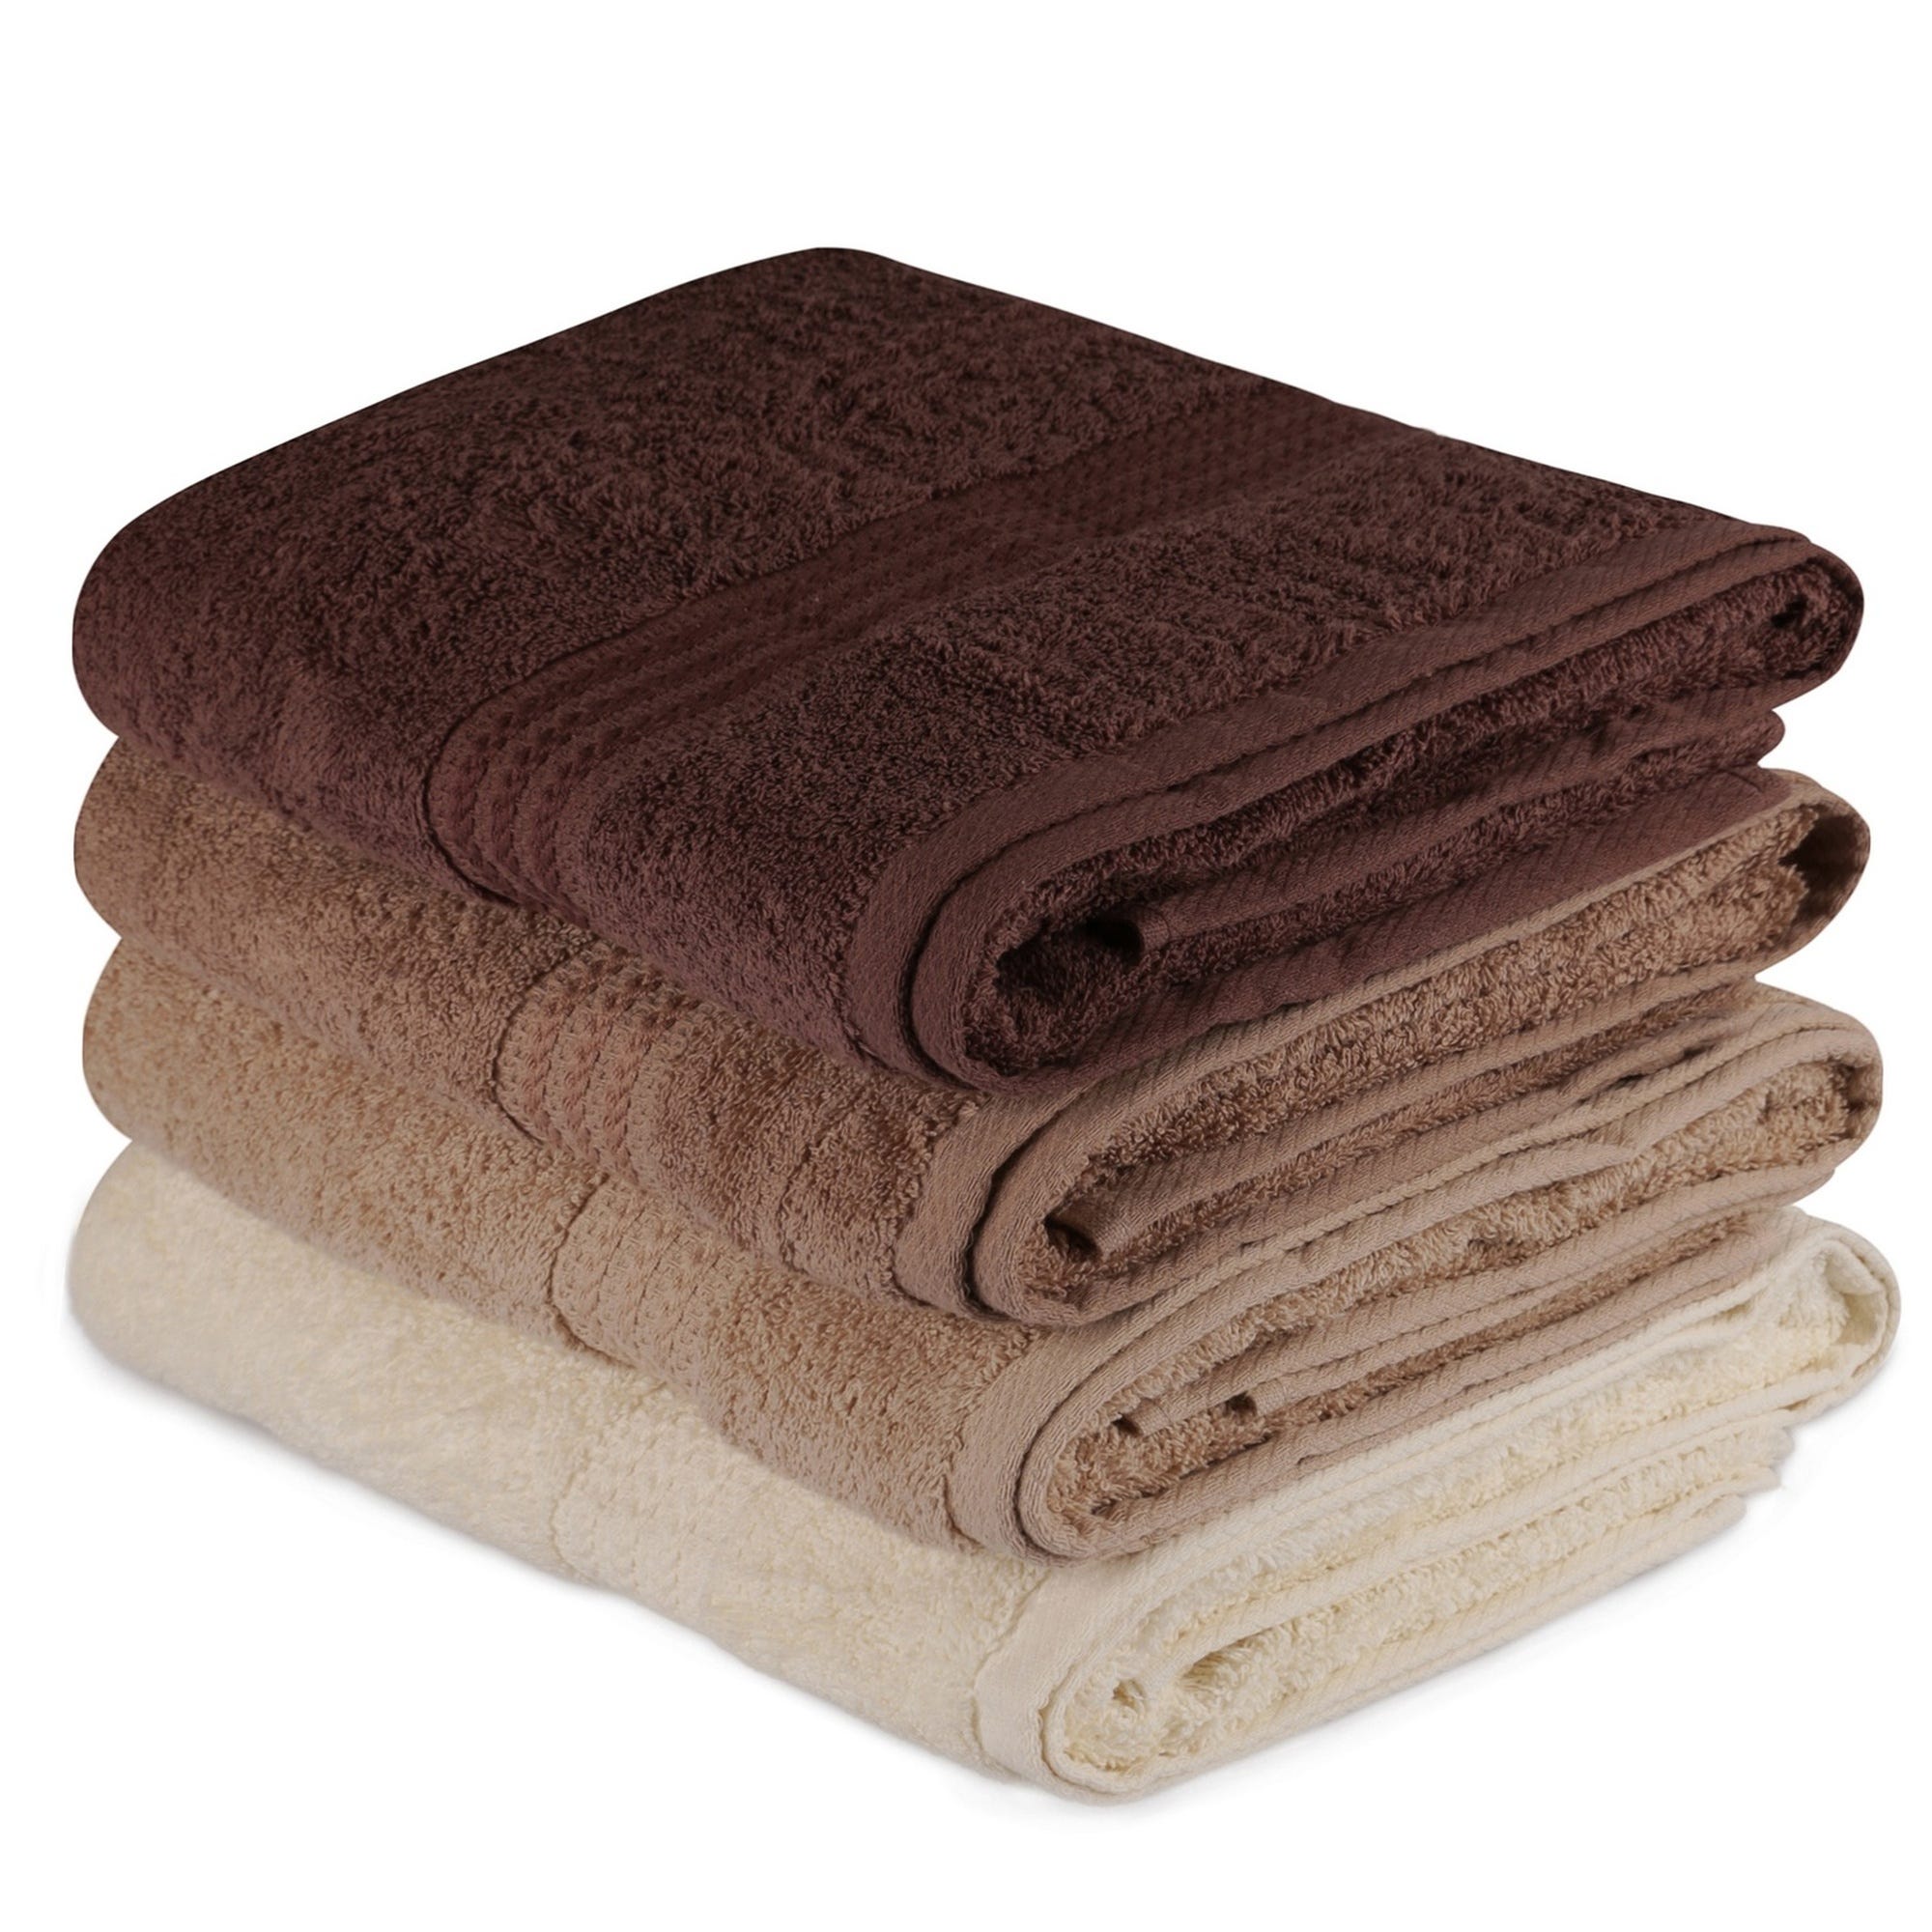 Juego de toallas de baño (4 piezas) crema, beige y marrón